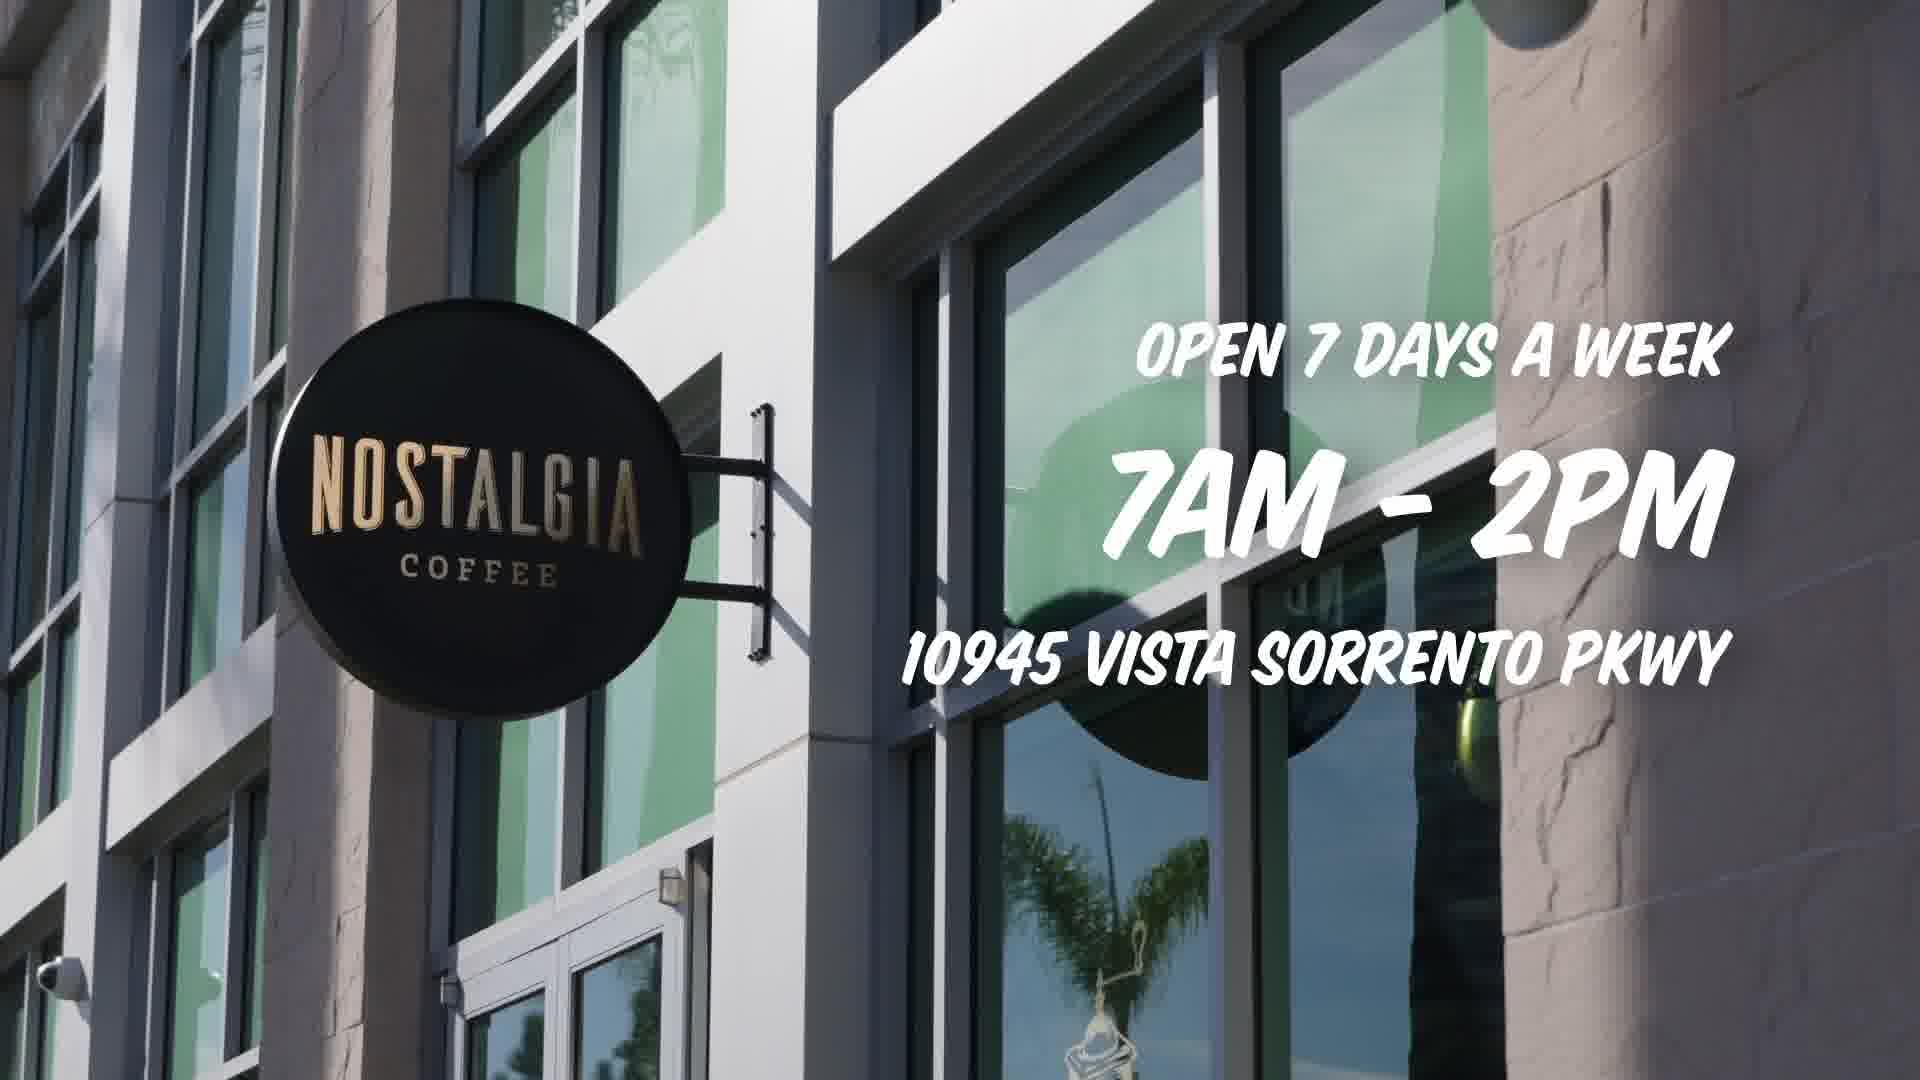 Nostalgia Coffee - Open 7 Days a week - 7am - 2pm - 10945 Vista Sorrento Pkwy